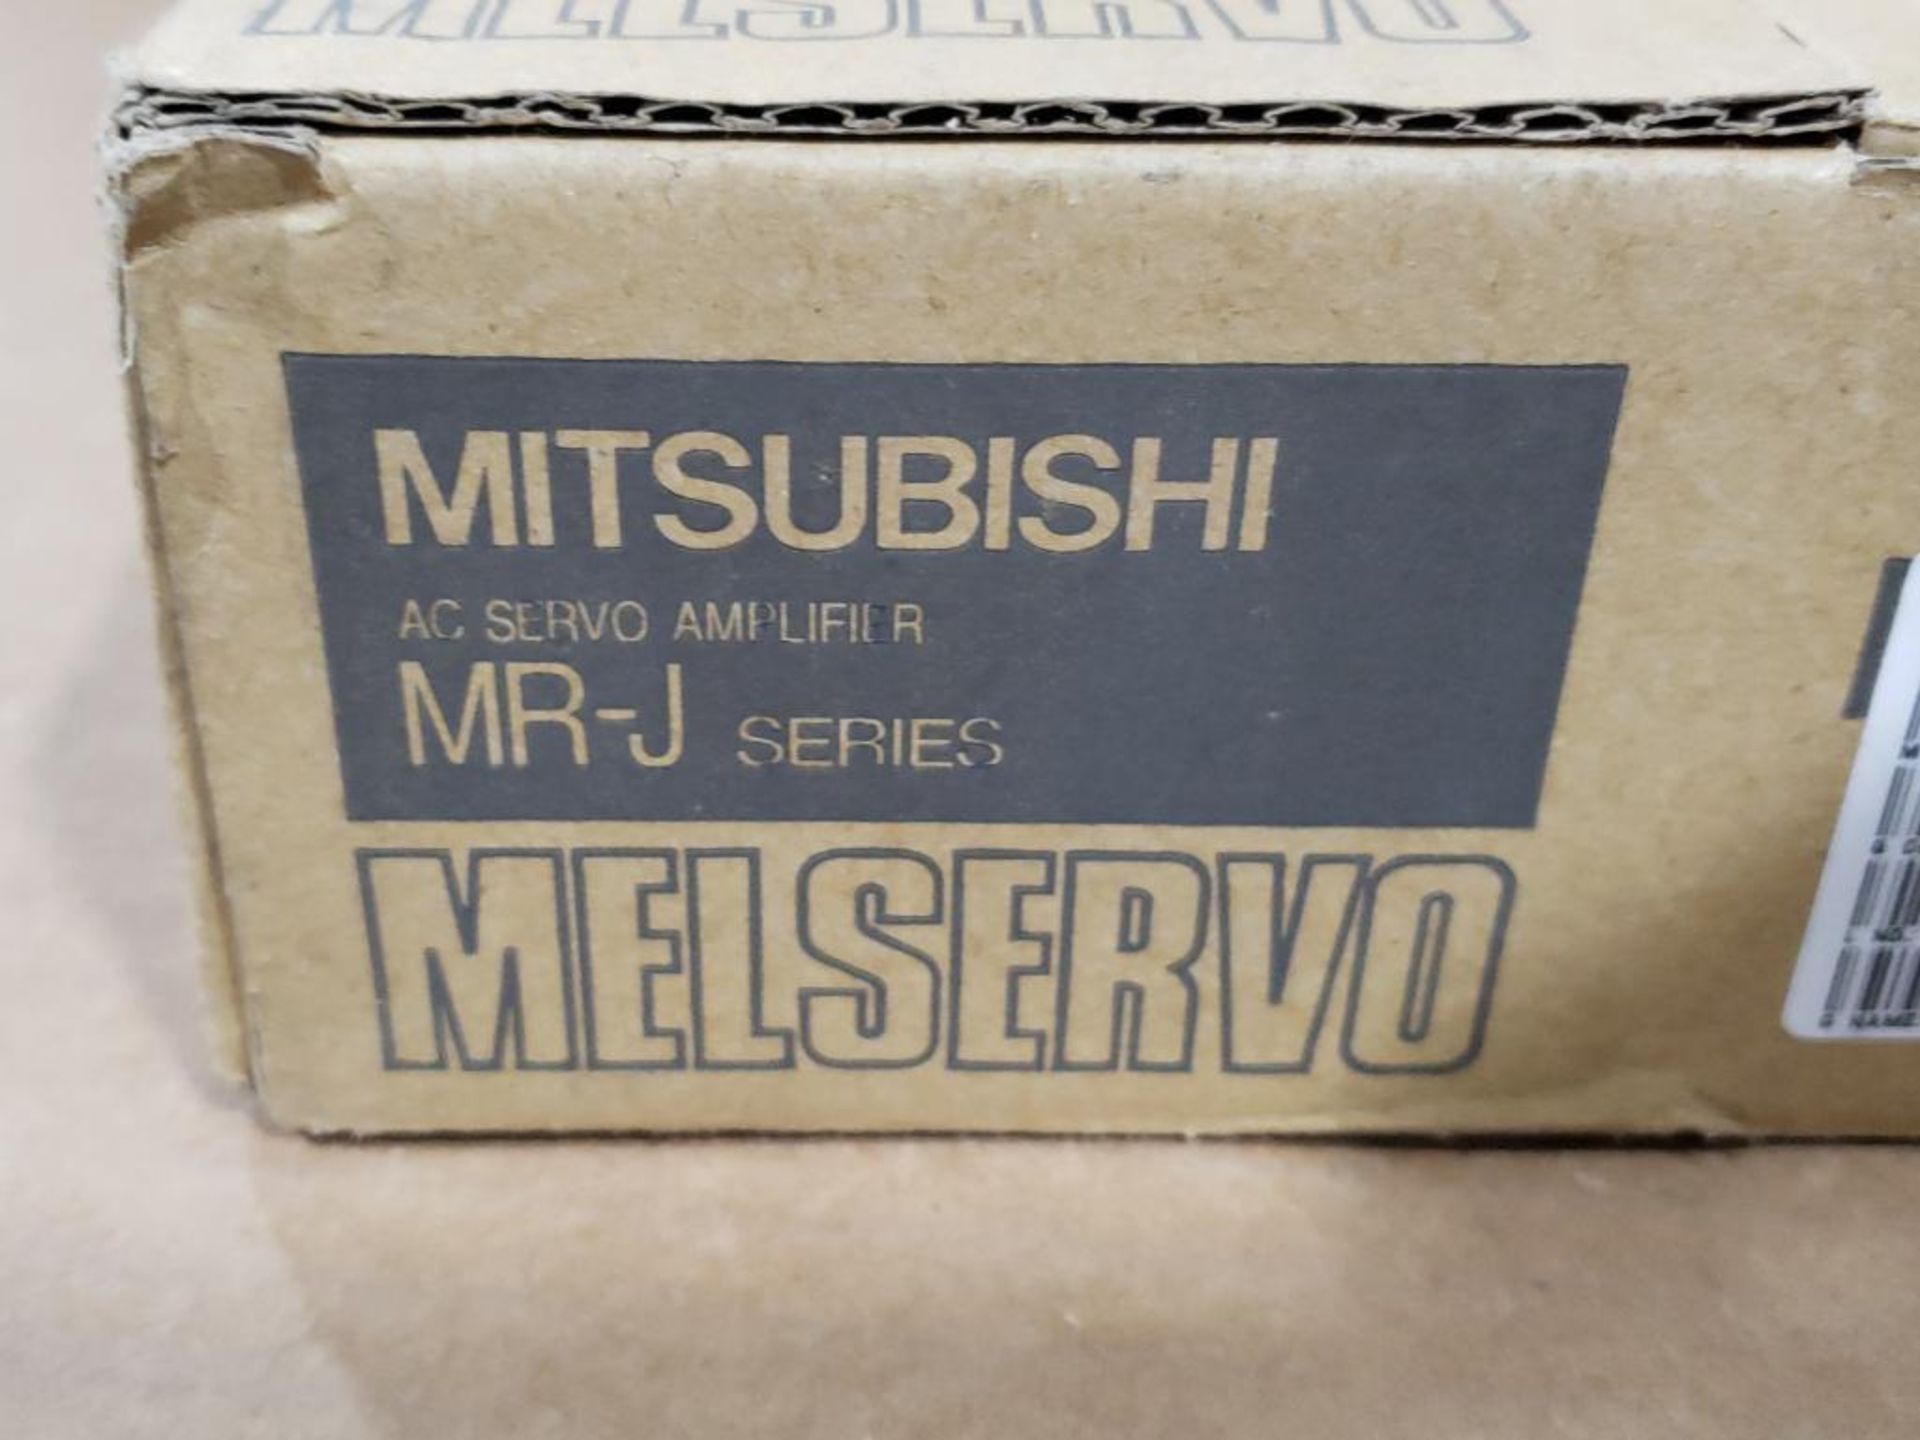 Mistubishi Melsec Melservo AC servo amplifier. Part number MR-J3-10B. - Image 4 of 5